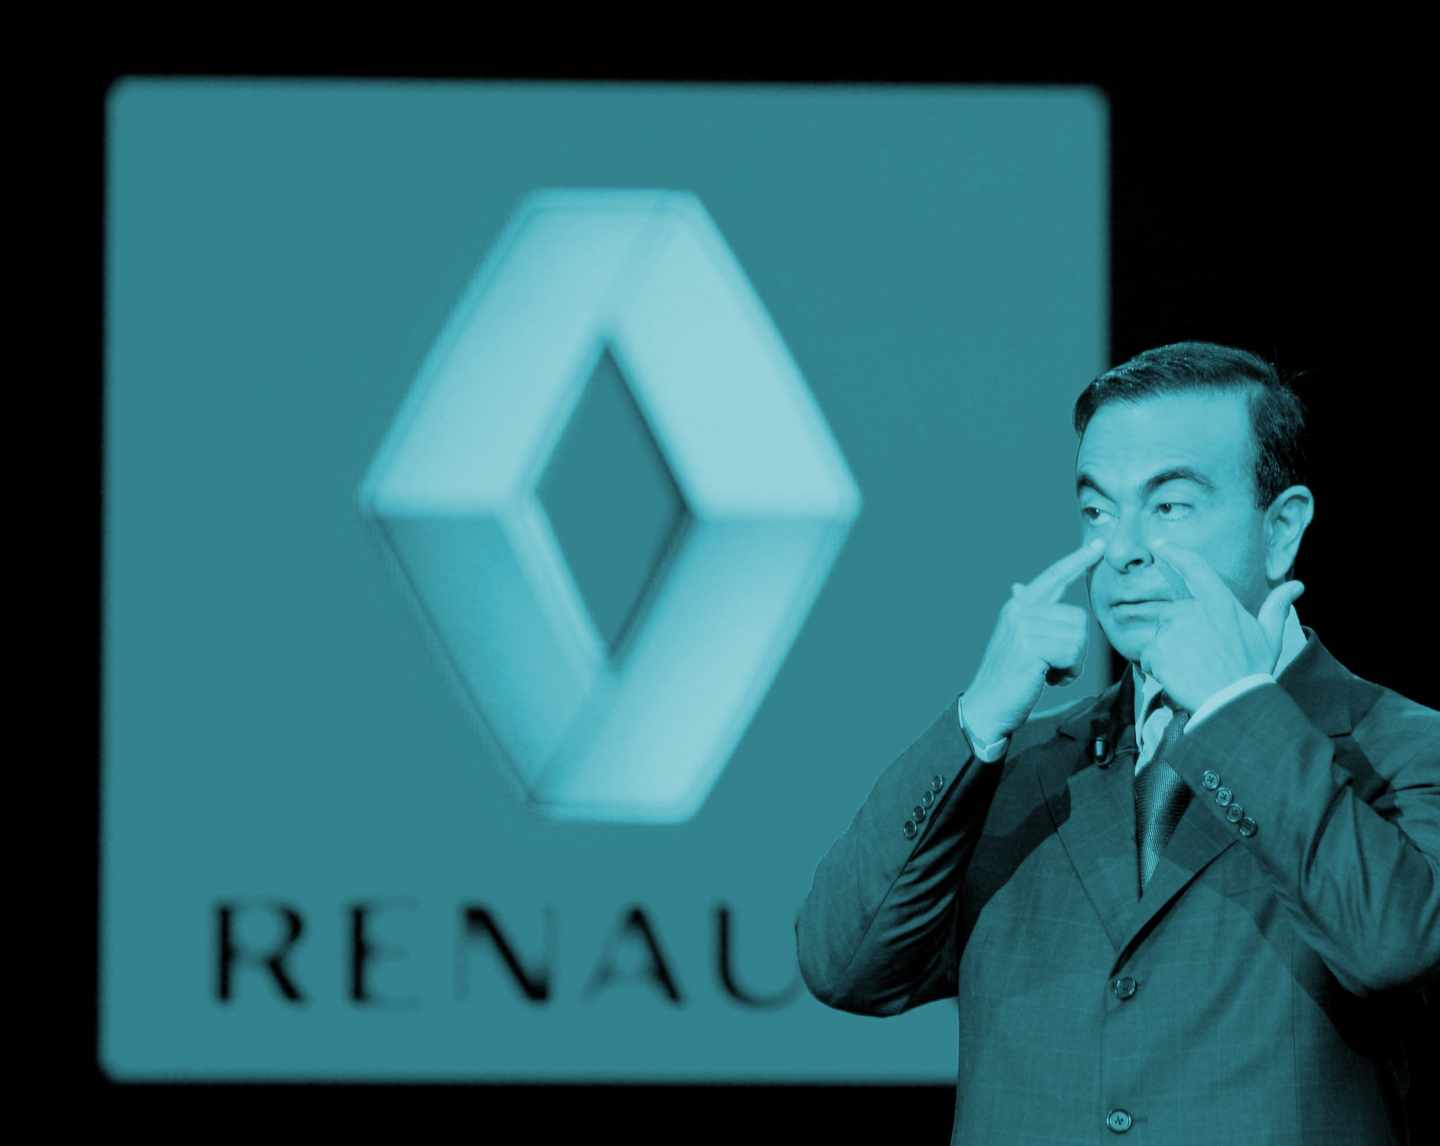 La caída del 'mata costes' y el futuro de la alianza Nissan-Renault.